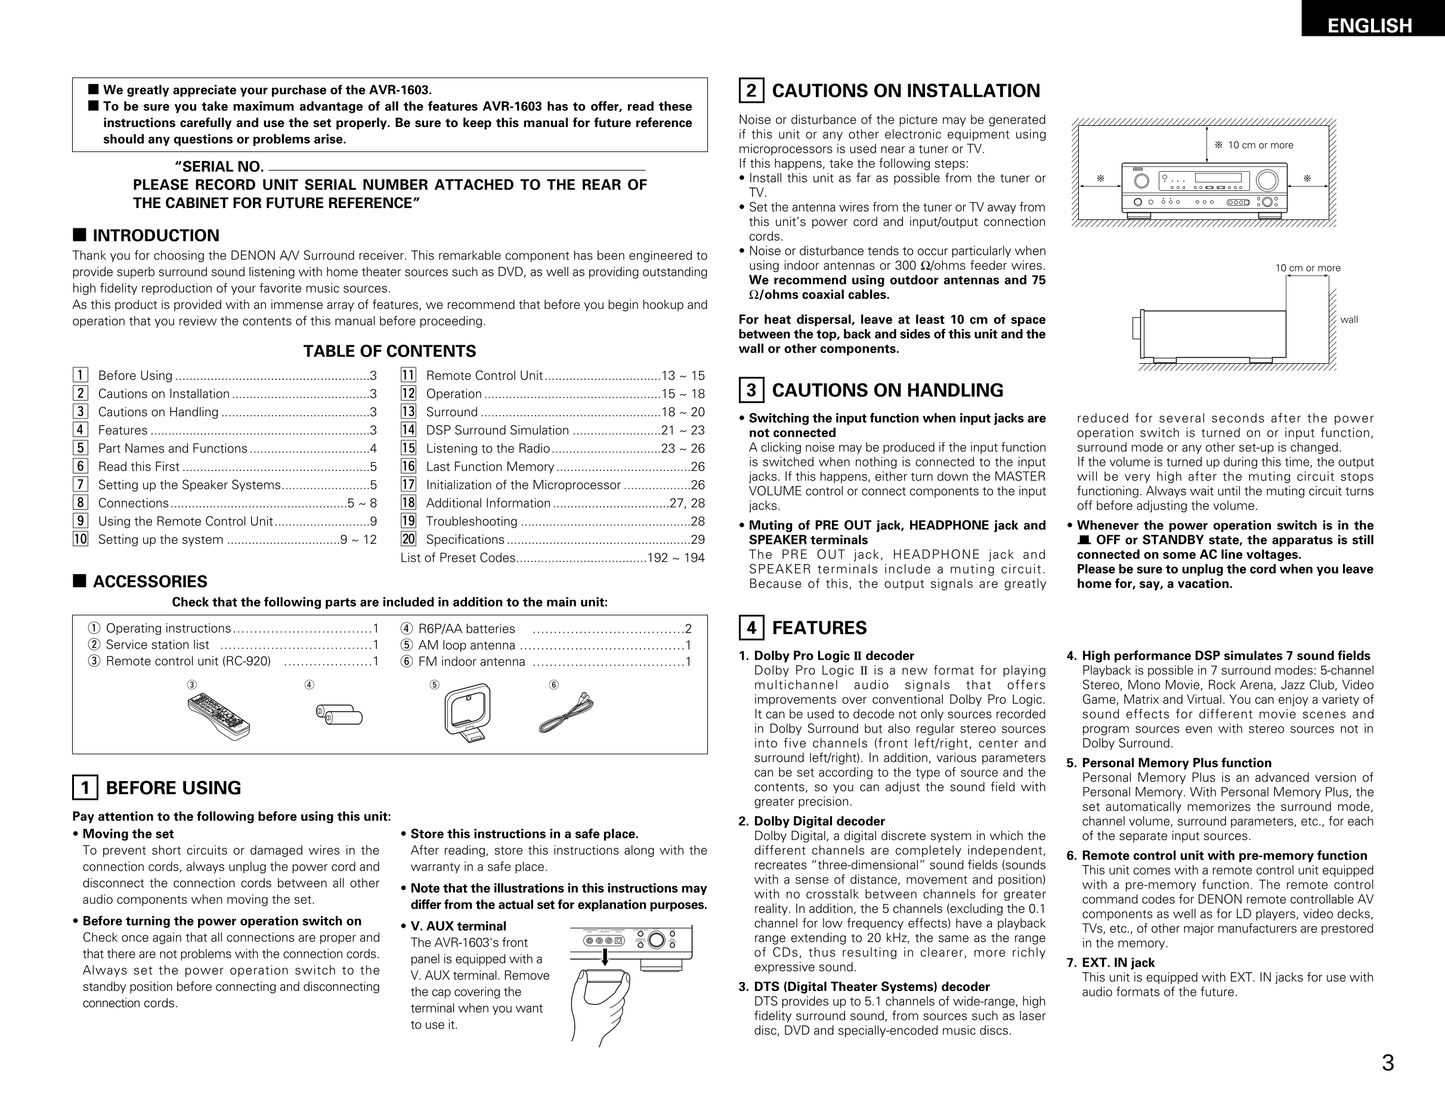 Denon AVR-1603 AV Receiver Owner's/ User Manual (Pages: 32)